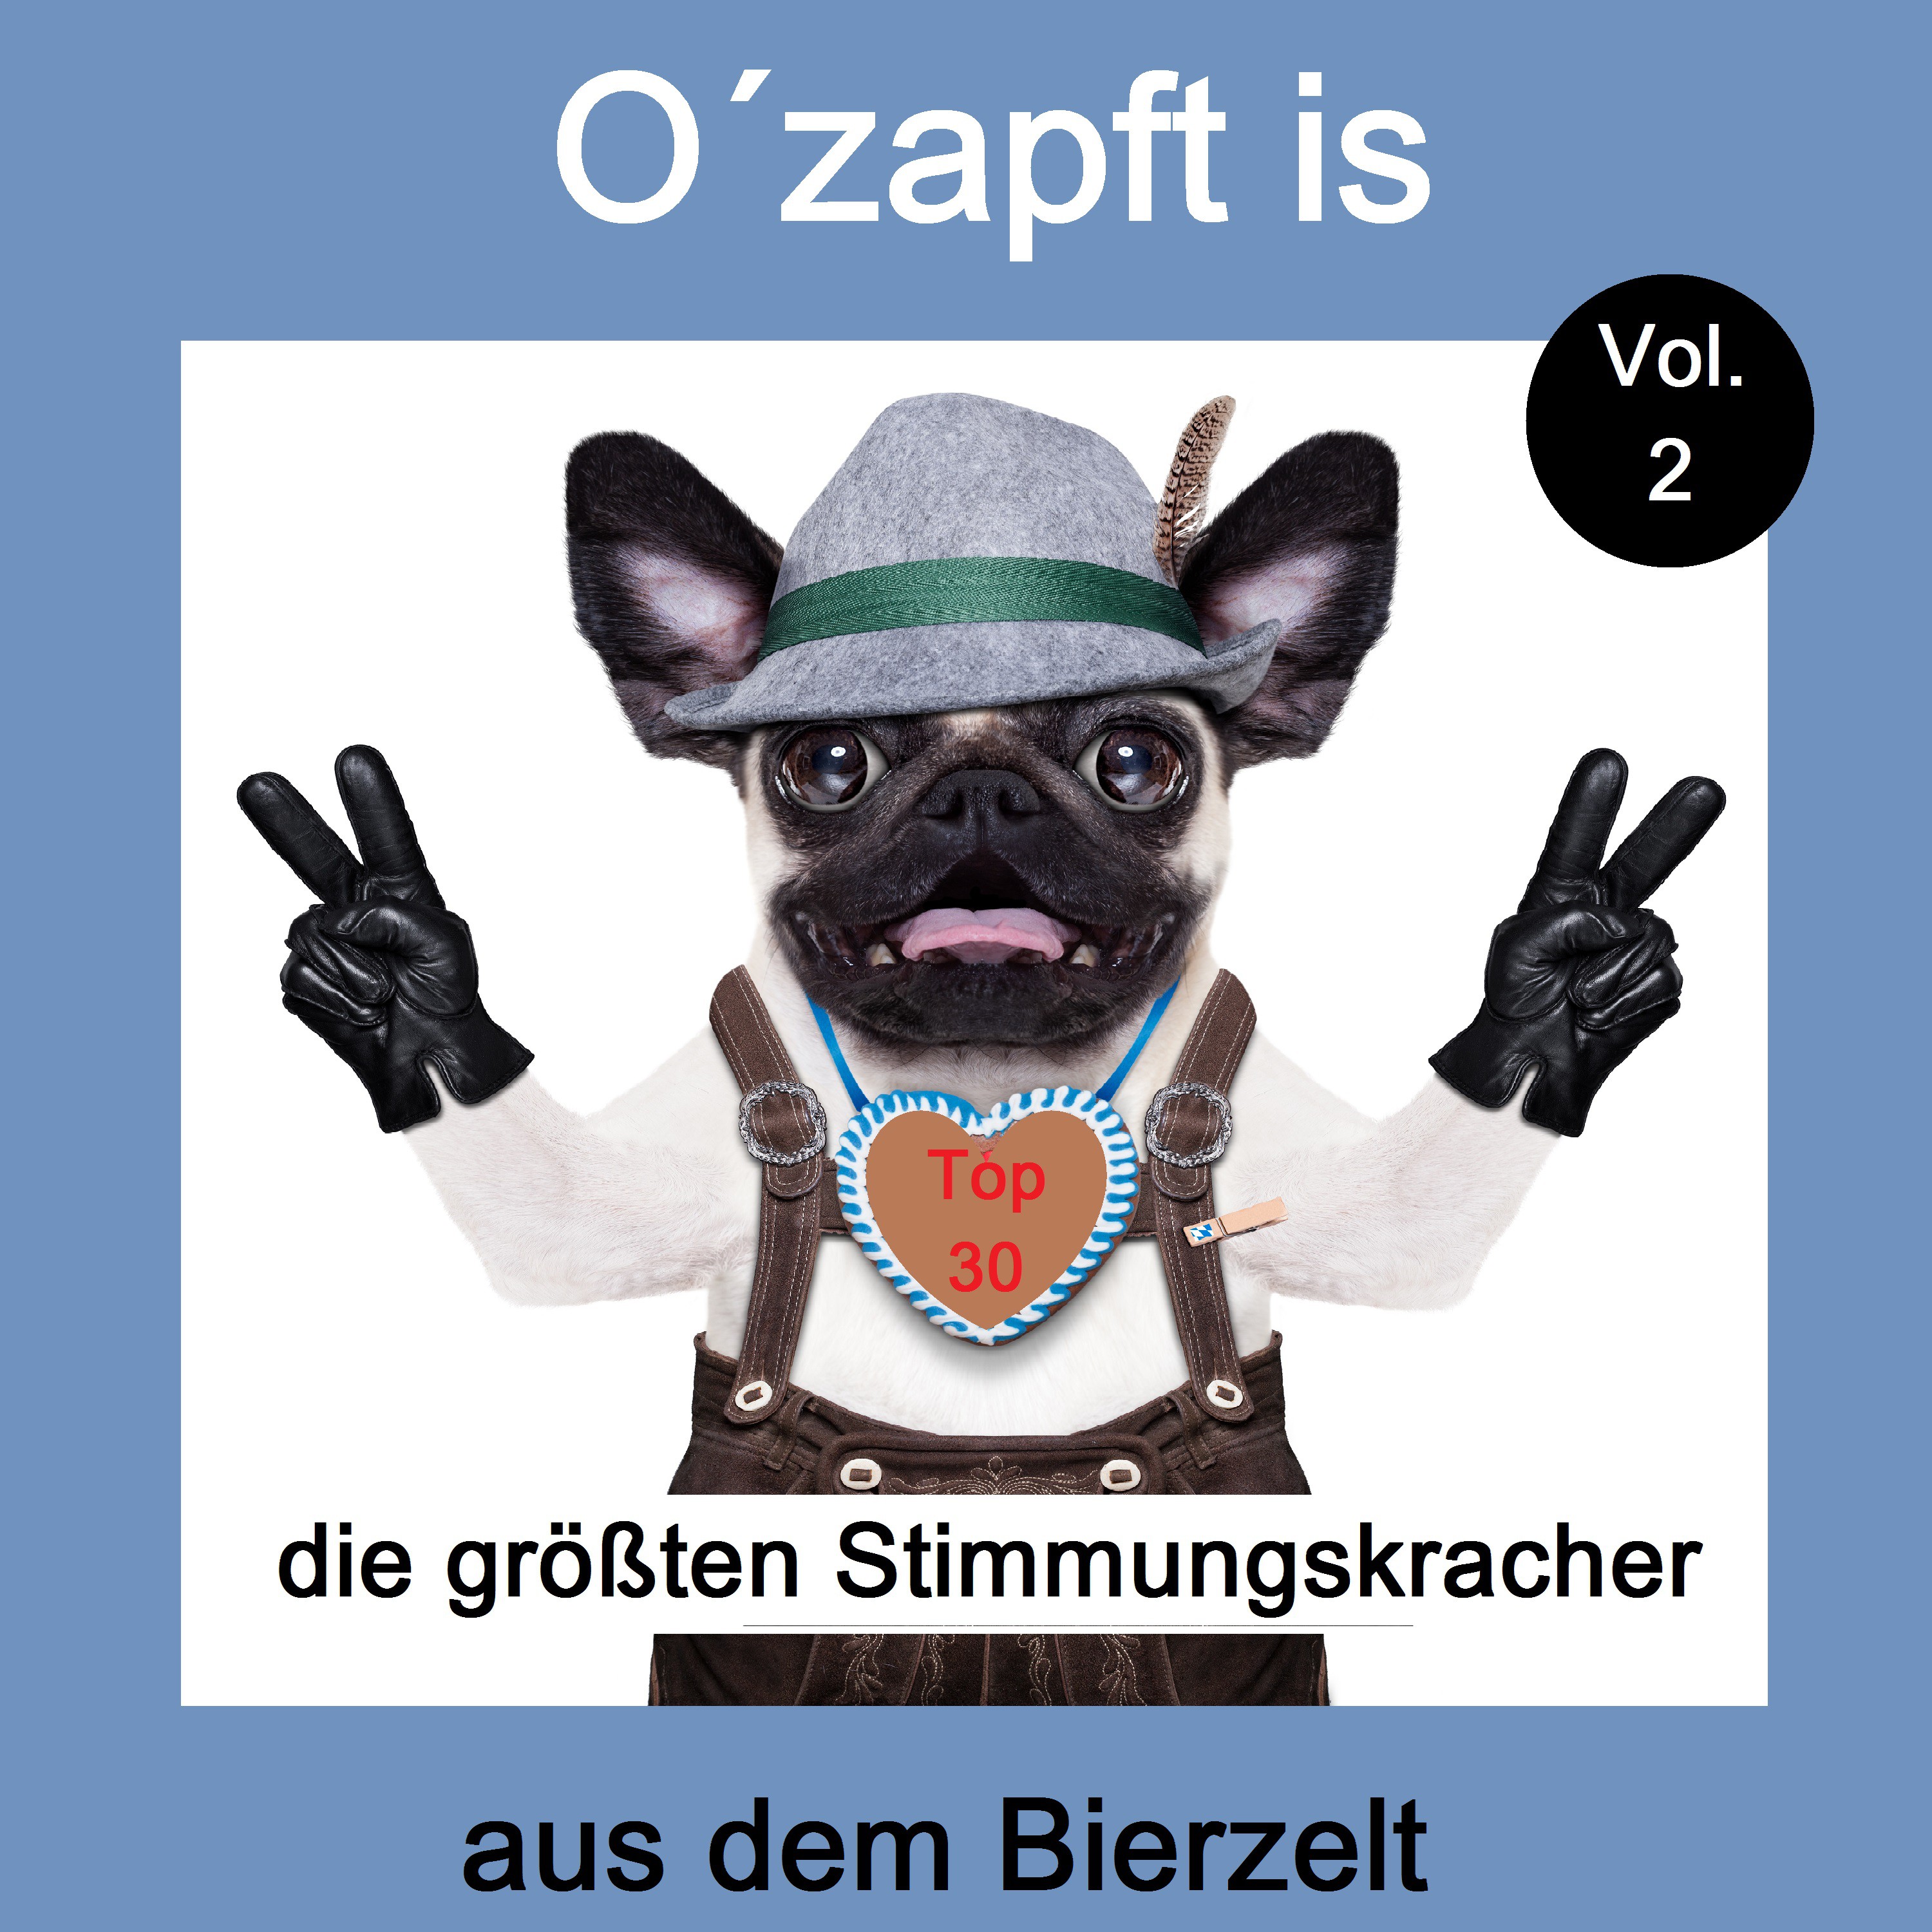 Top 30: O' zapft is  Die gr ten Stimmungskracher aus dem Bierzelt, Vol. 2